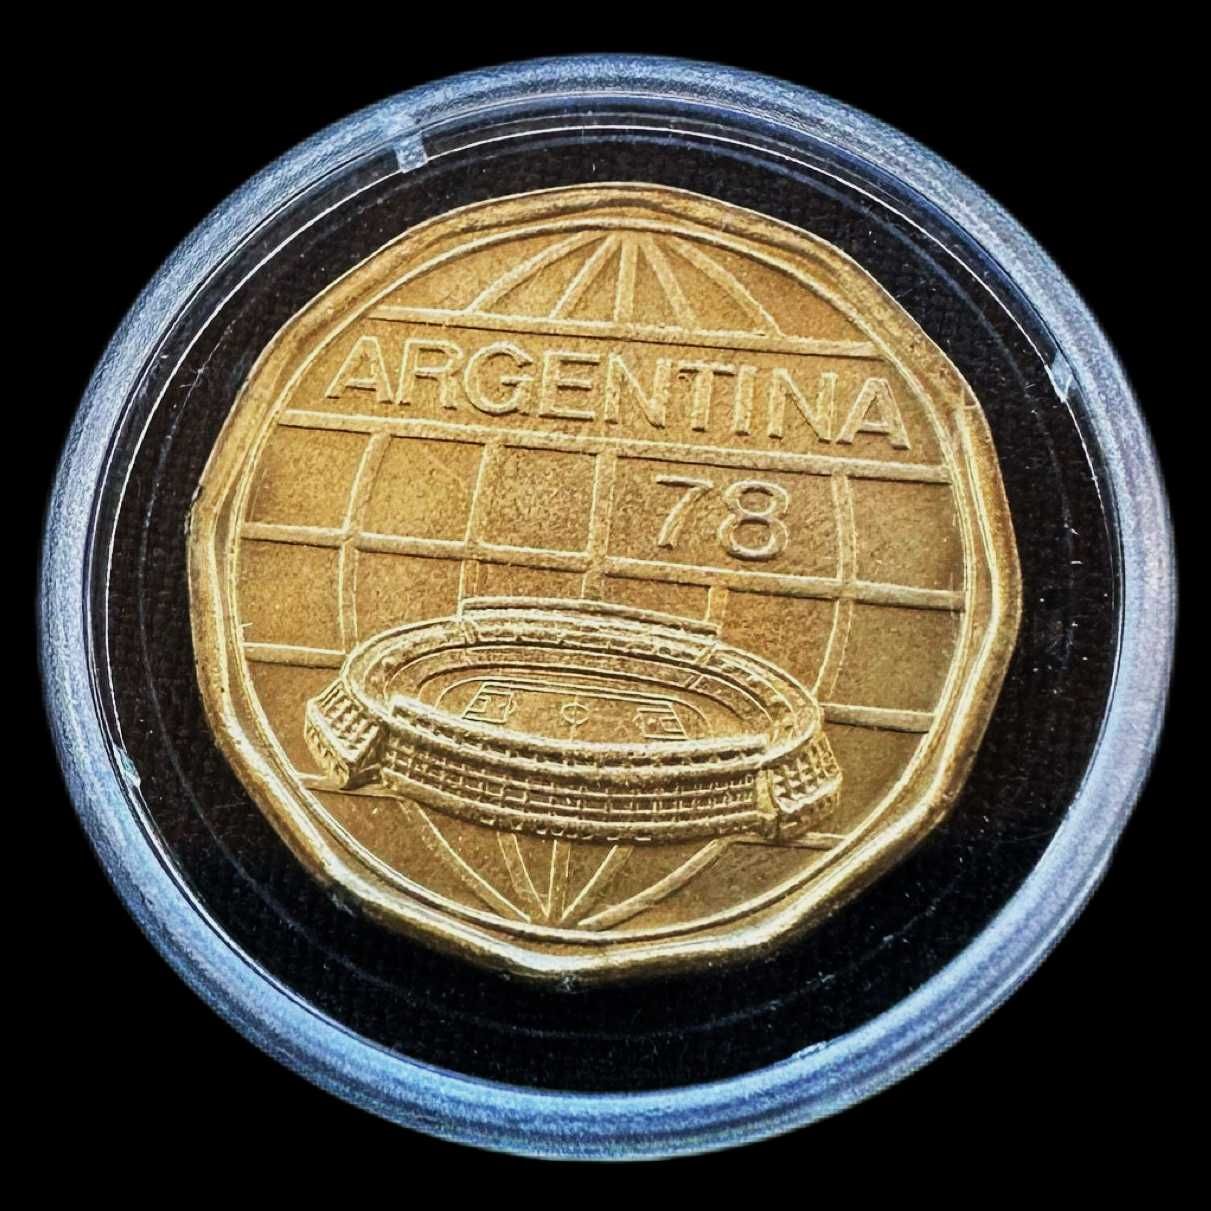 Moeda de 100 Pesos - 1978 - Argentina - Campeonato de Futebol da FIFA